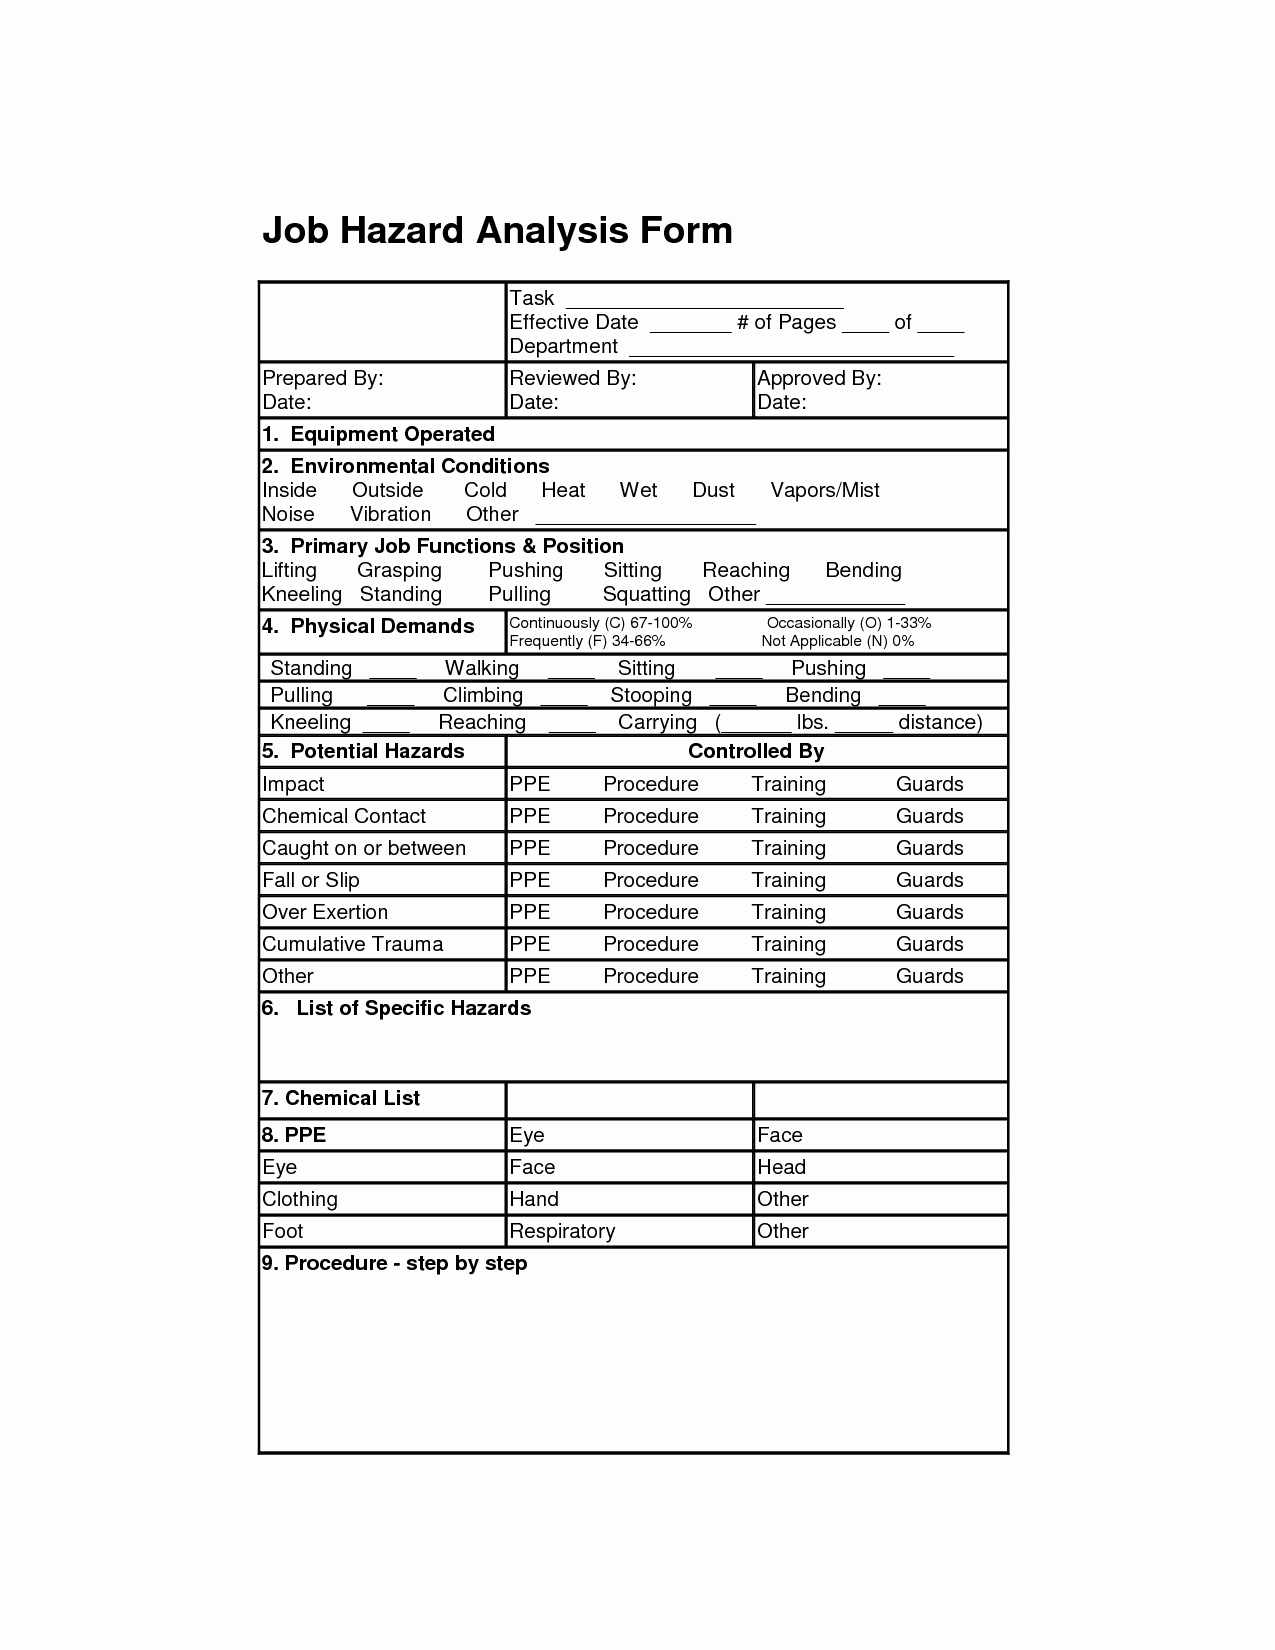 Job Safety Analysis Template Beautiful Job Hazard Analysis form Job Analysis forms